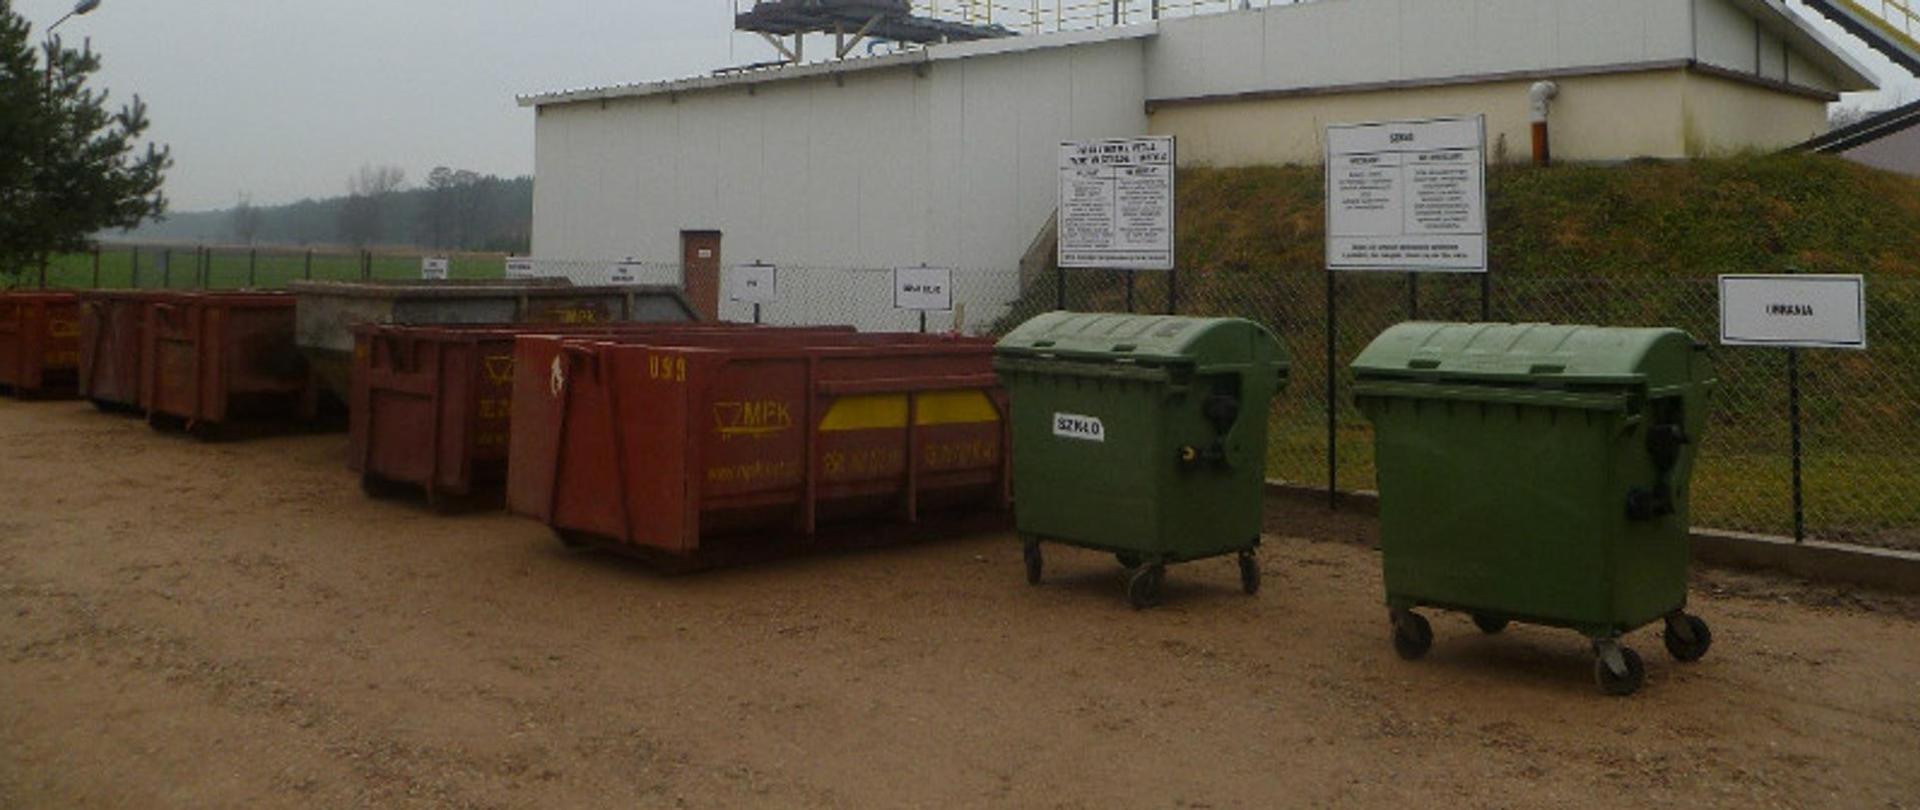 Duże czerwone kontenery oraz dwa zielone pojemniki na śmieci ustawione w rzędzie obok siebie